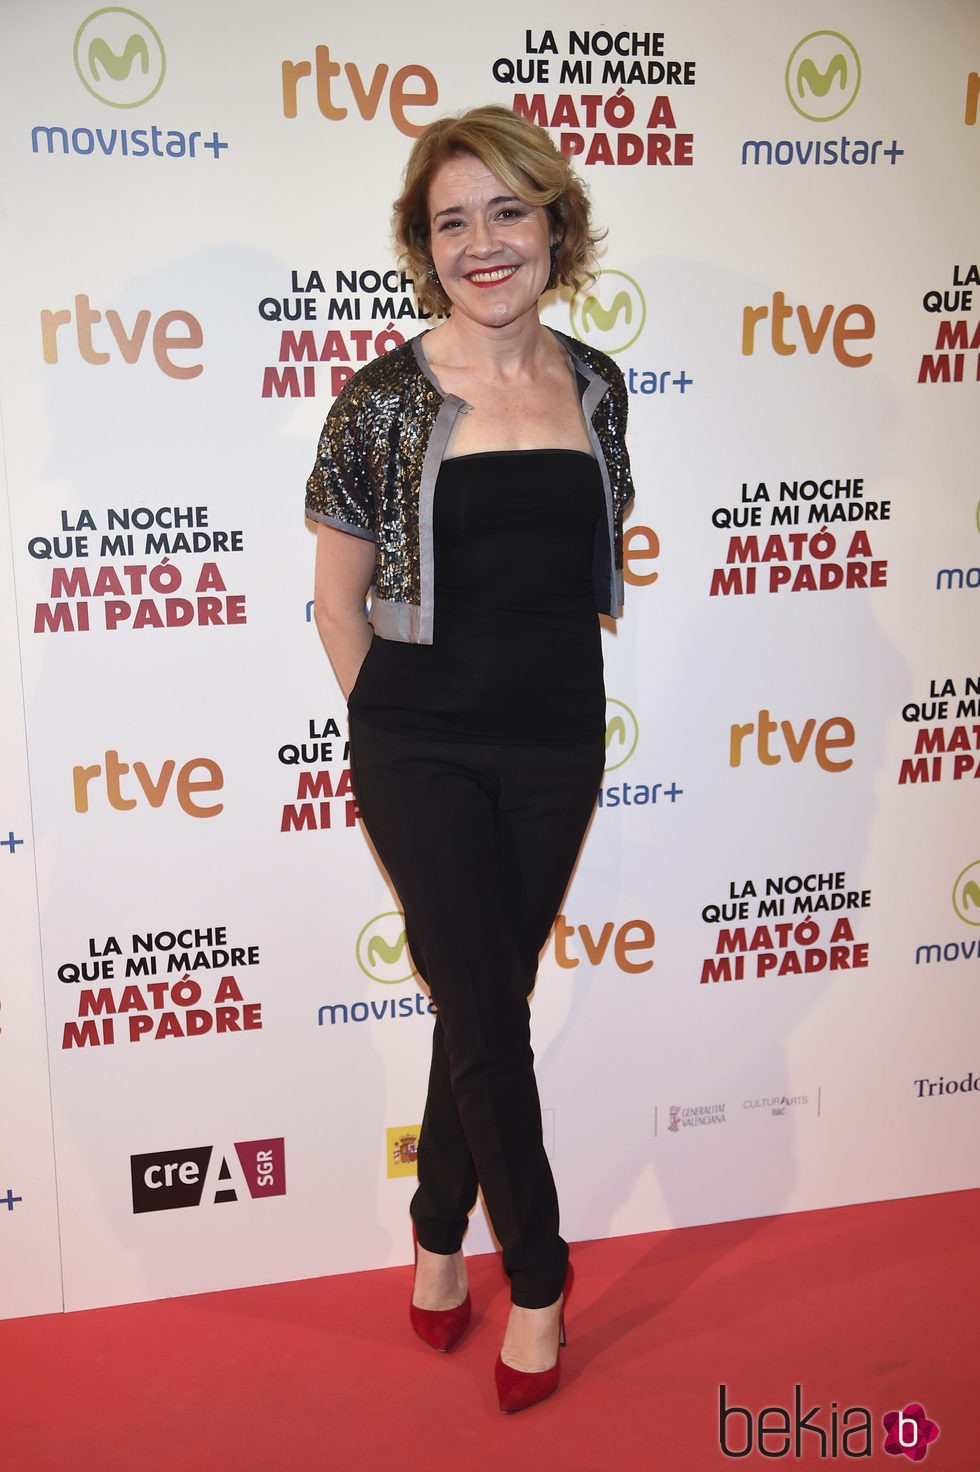 María Pujalte en la premiere de la película 'La noche que mi madre mató a mi padre' en Madrid